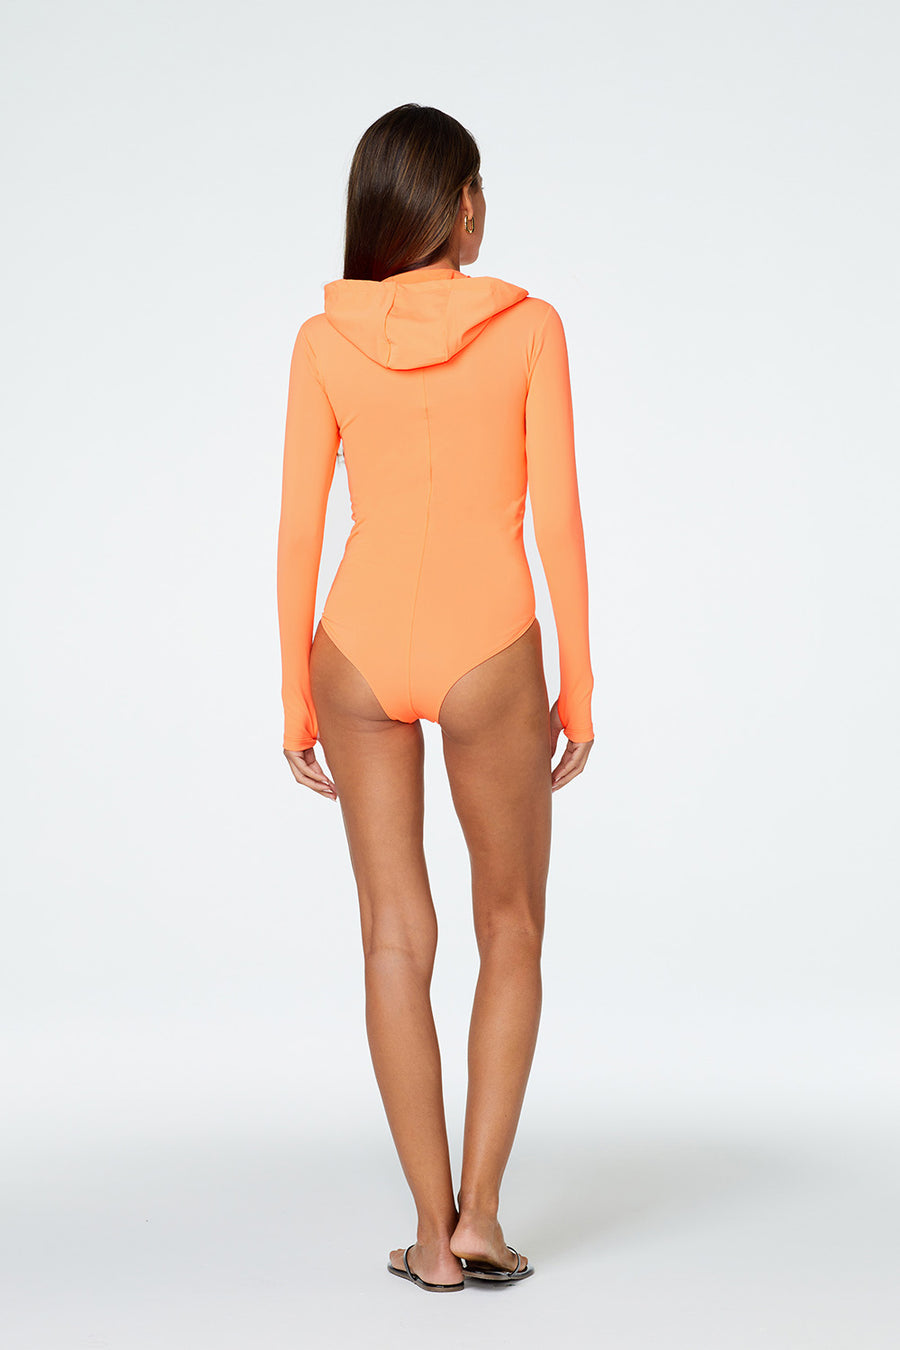 Lola Bodysuit in Orange Back